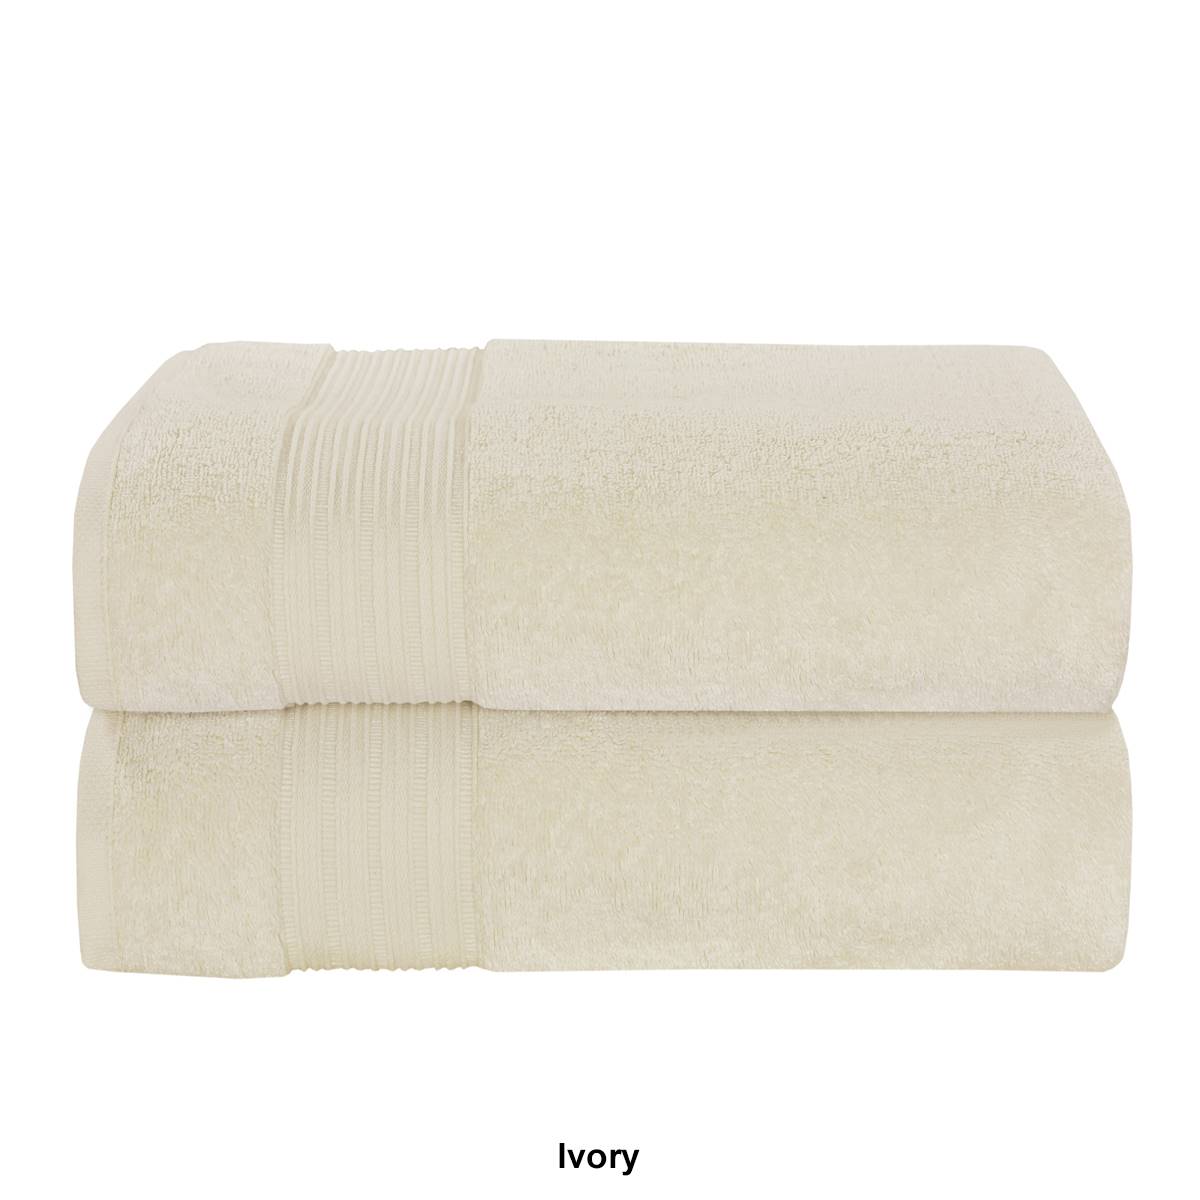 J. Queen New York Serra 2pc. Bath Towel Set